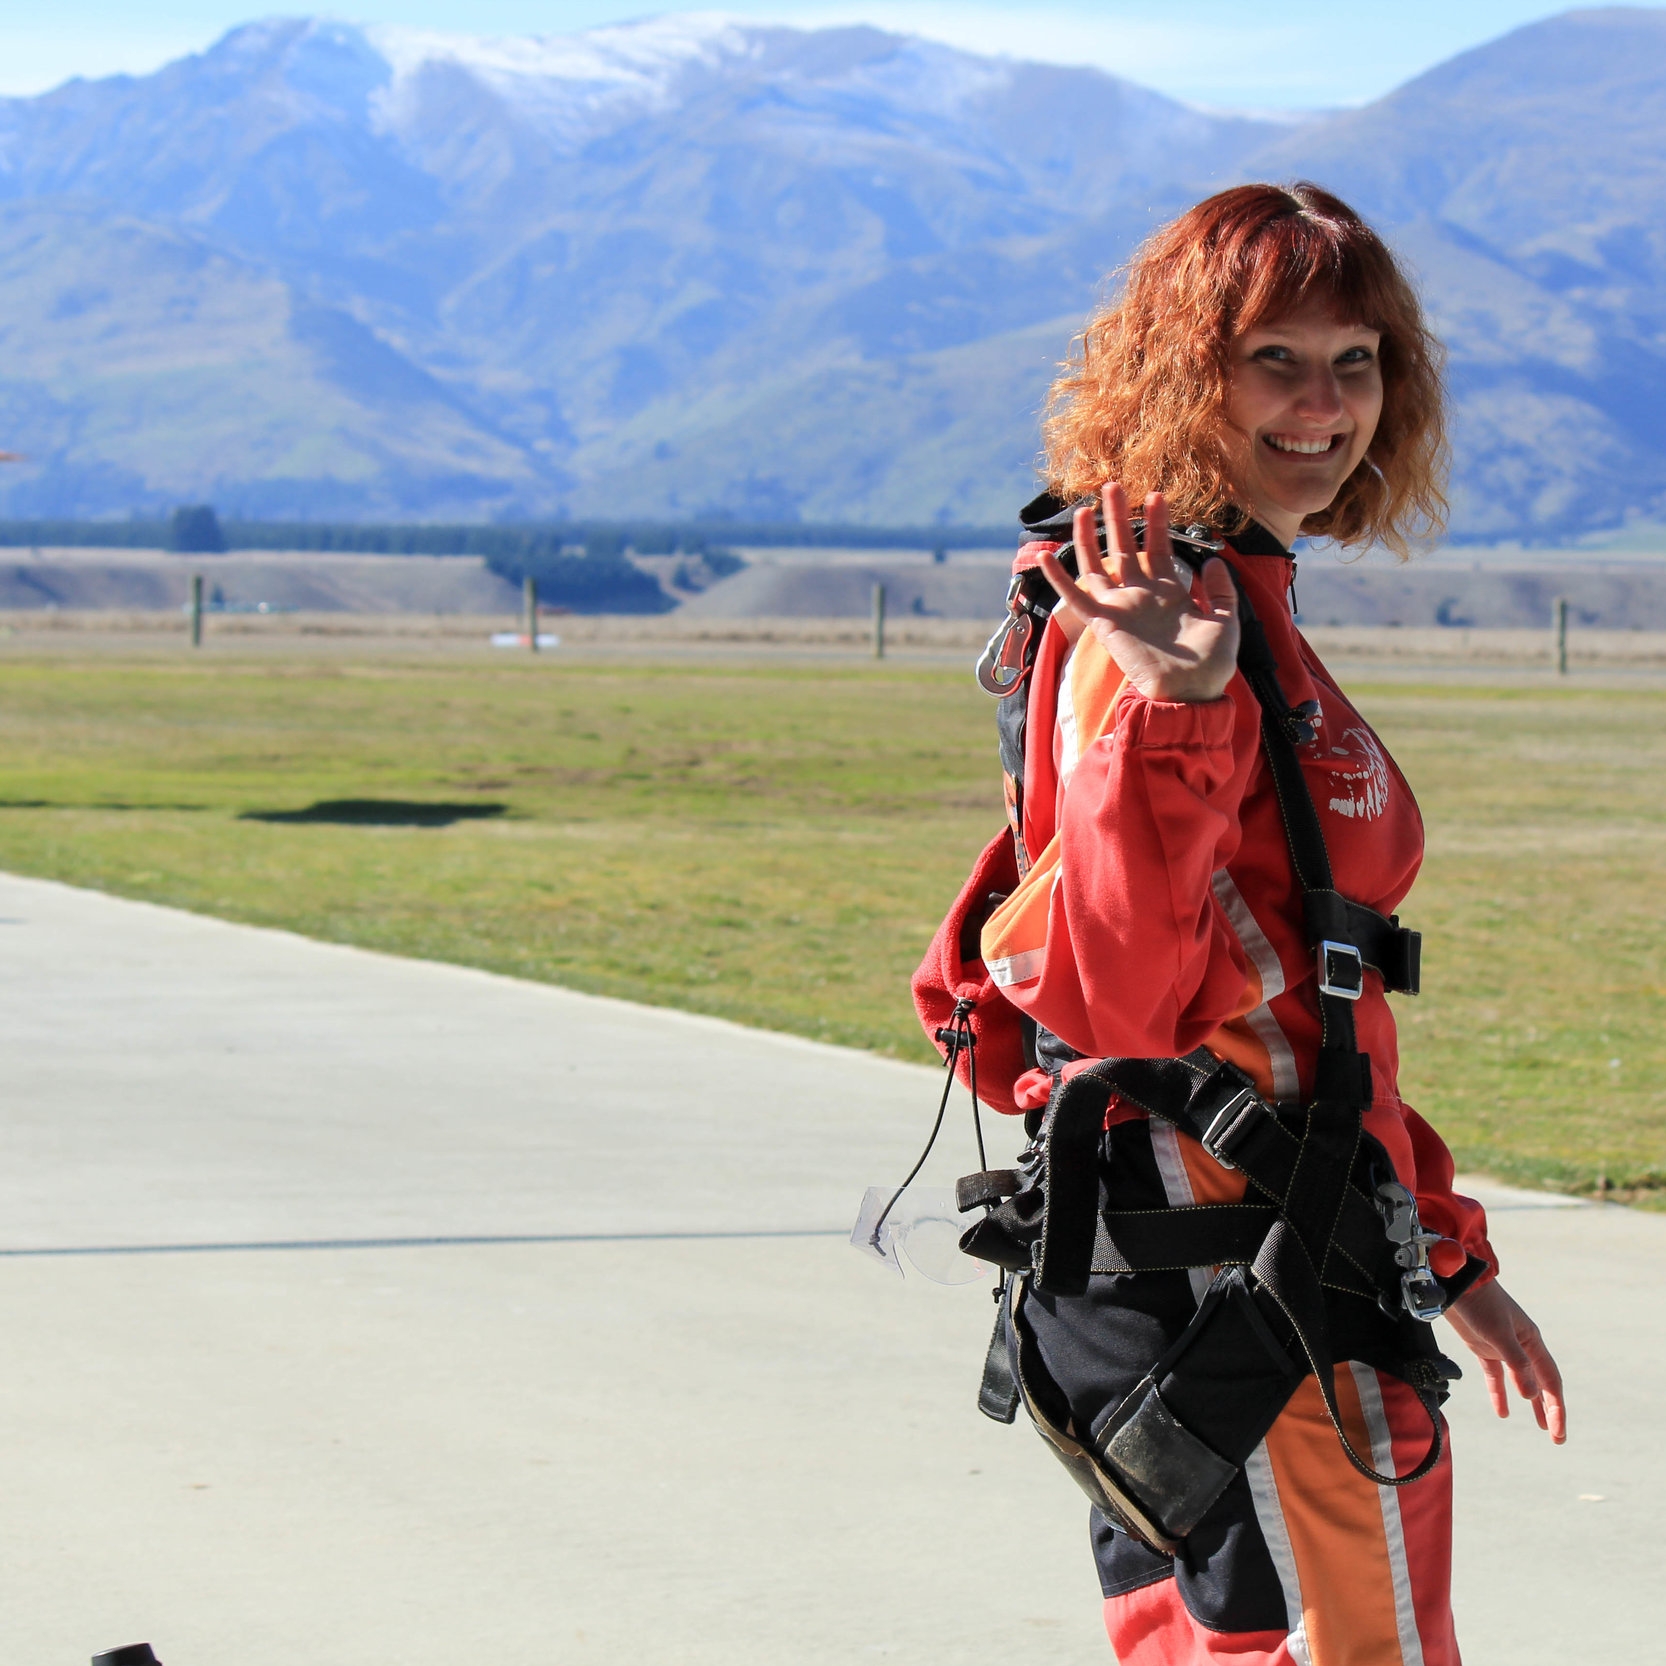 Skydiving Wanaka, New Zealand